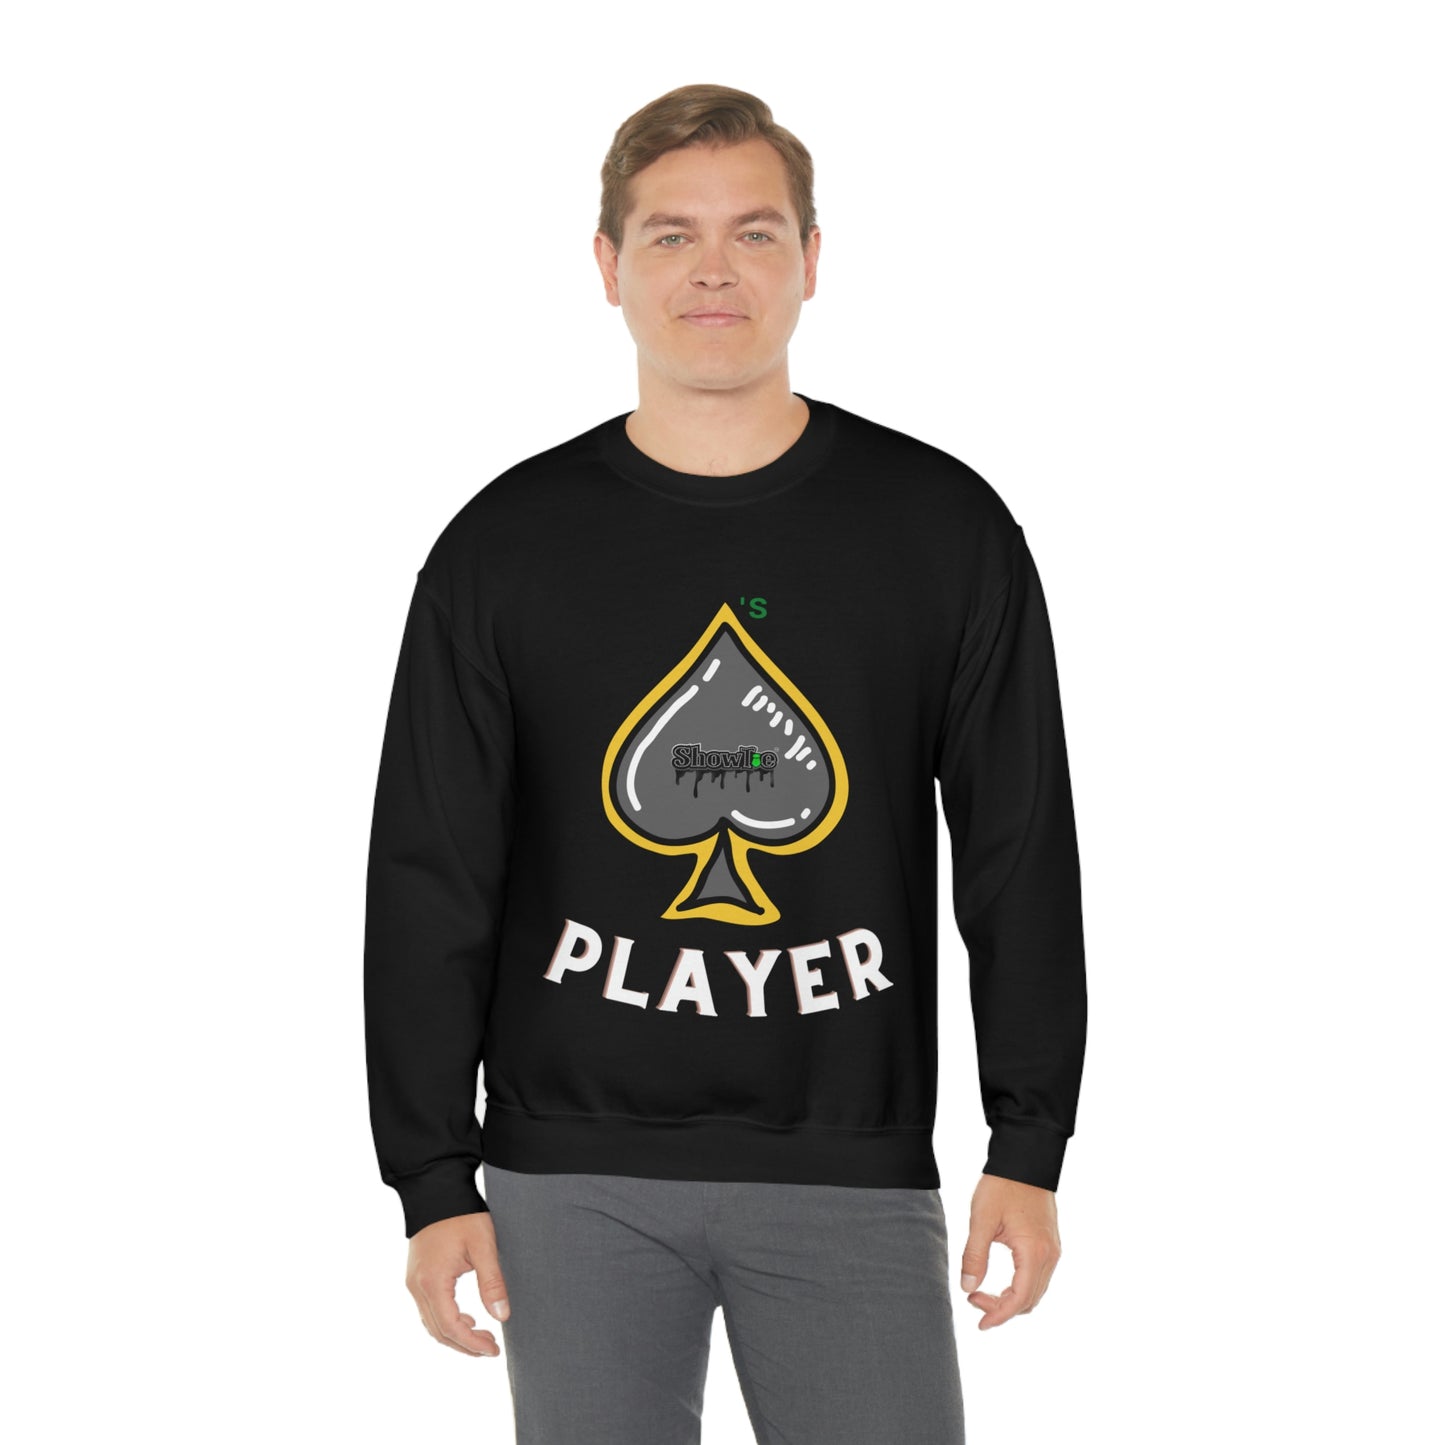 Showtie Spades Player Sweatshirt